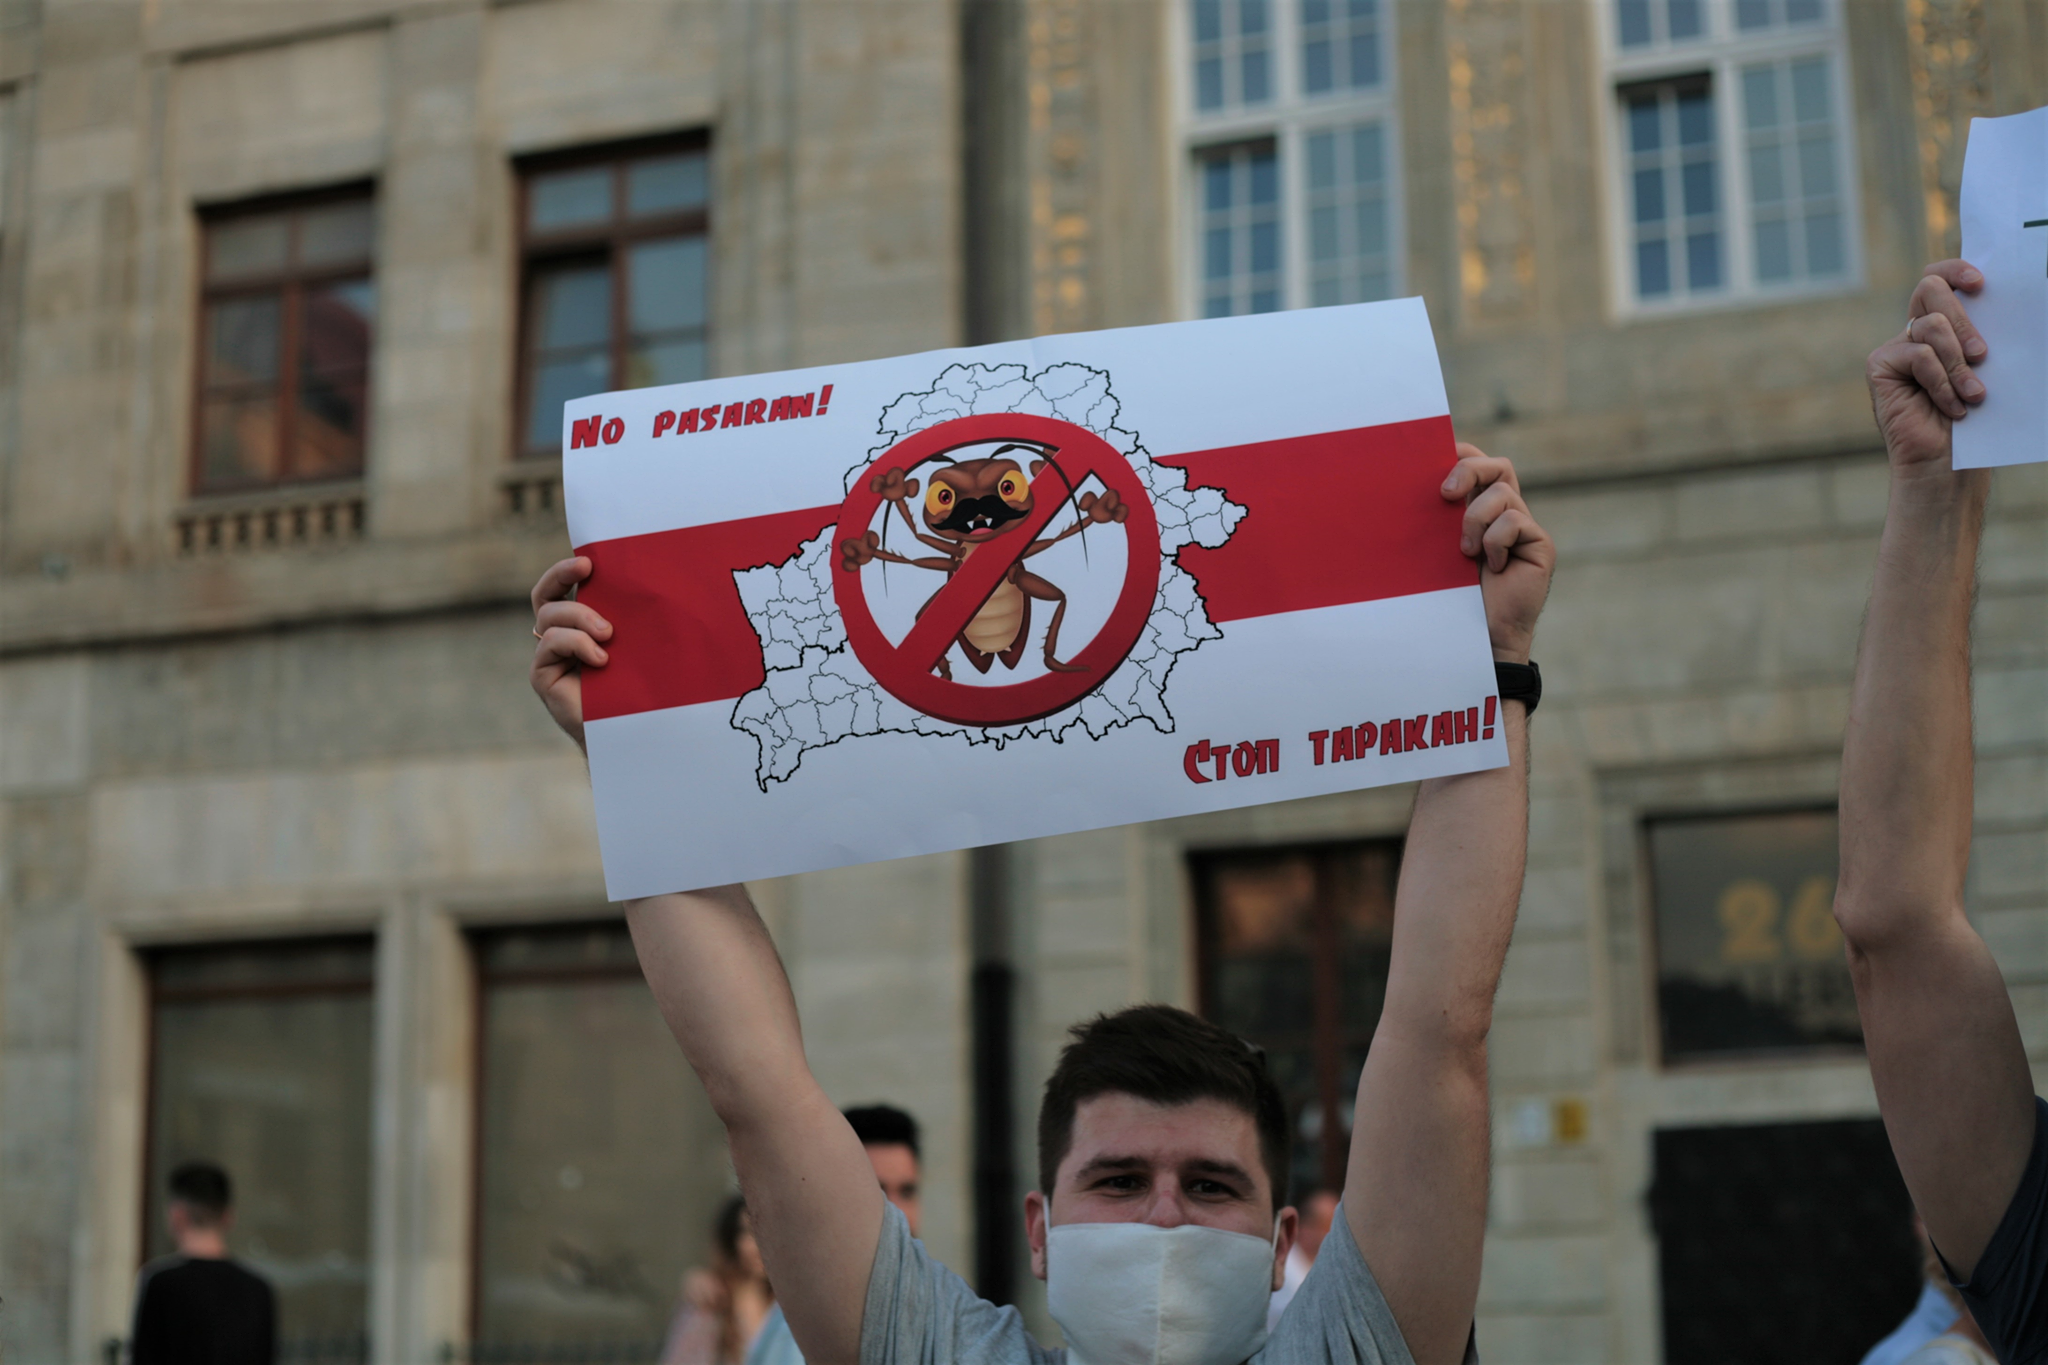 митинг белорусов в Польше - Стоп таракан